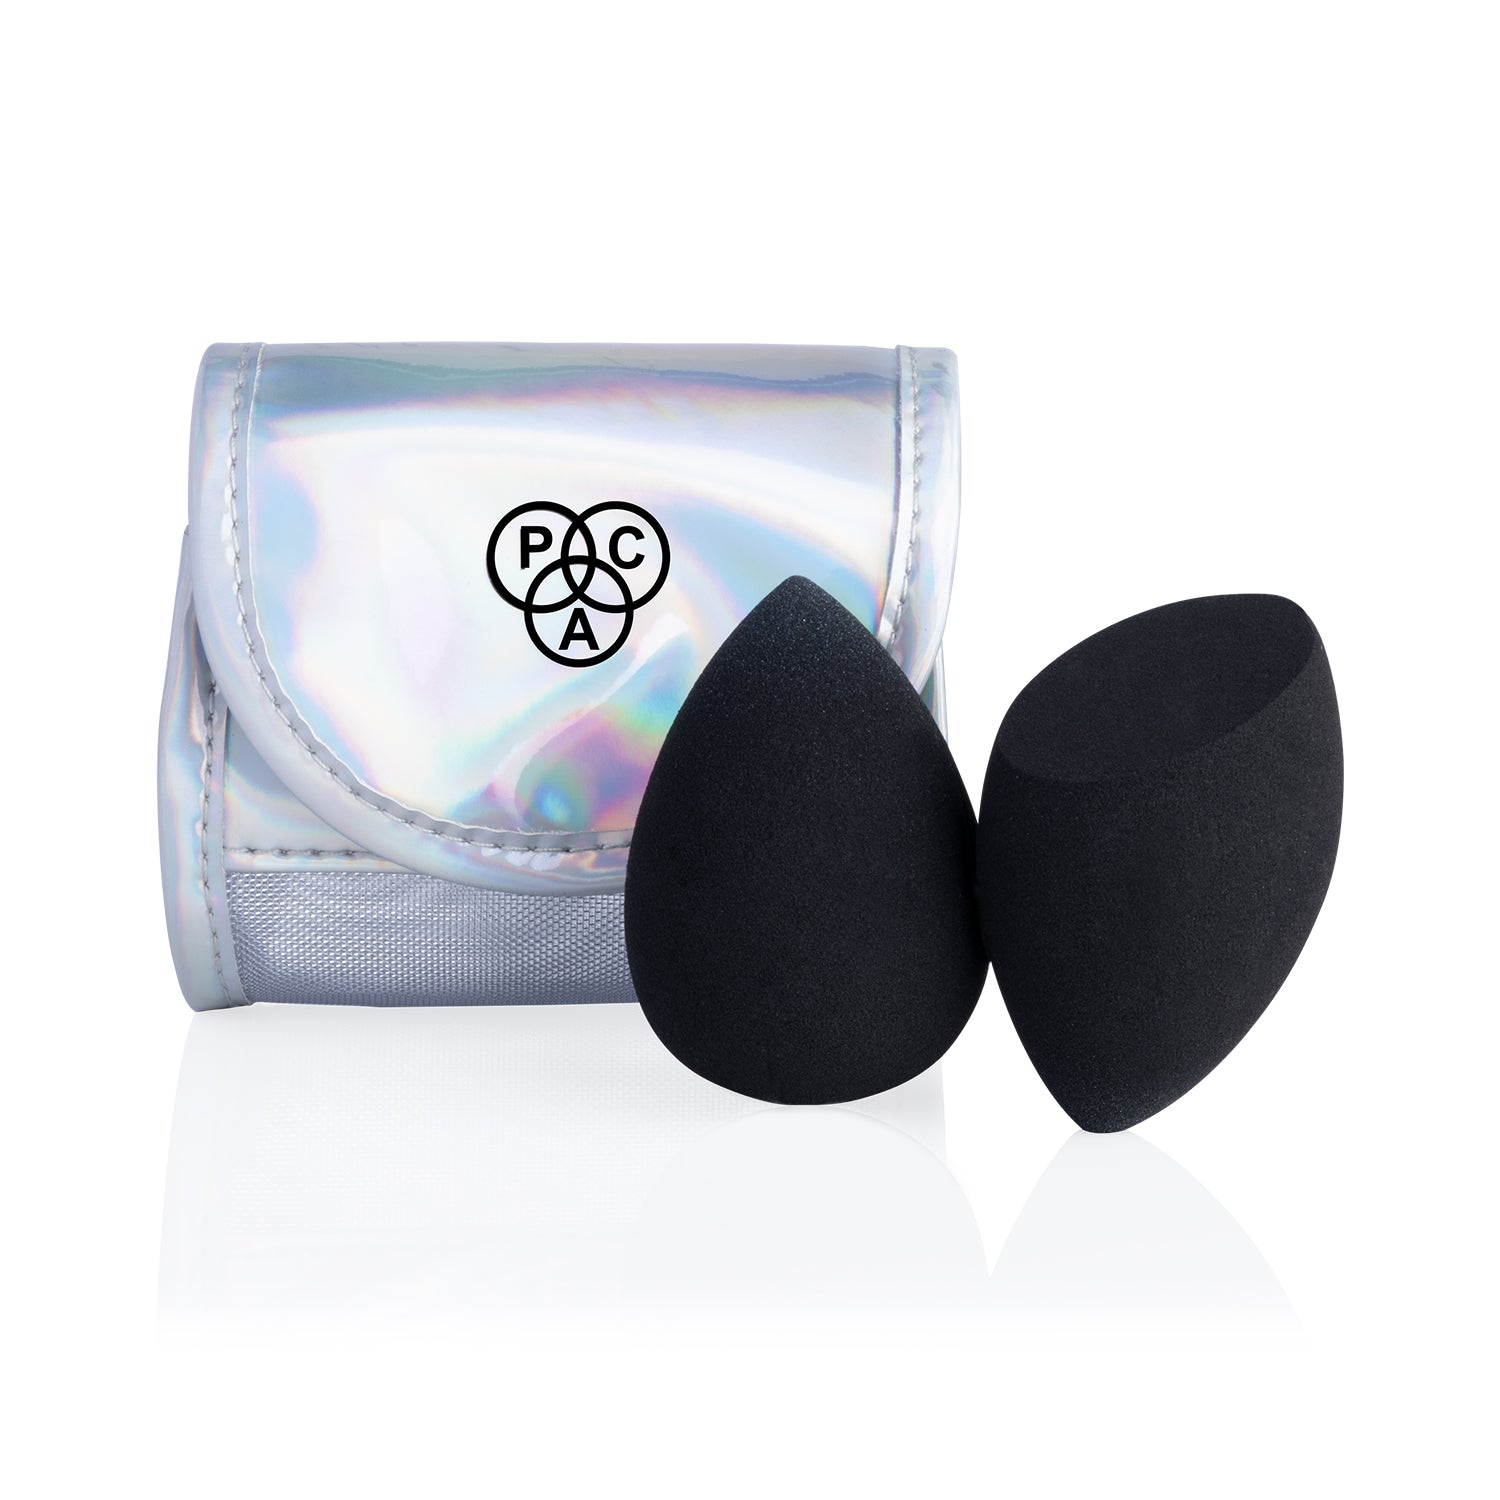 PAC Cosmetics 3D Sponge Set Limited Edition Holographic (2 Pcs)